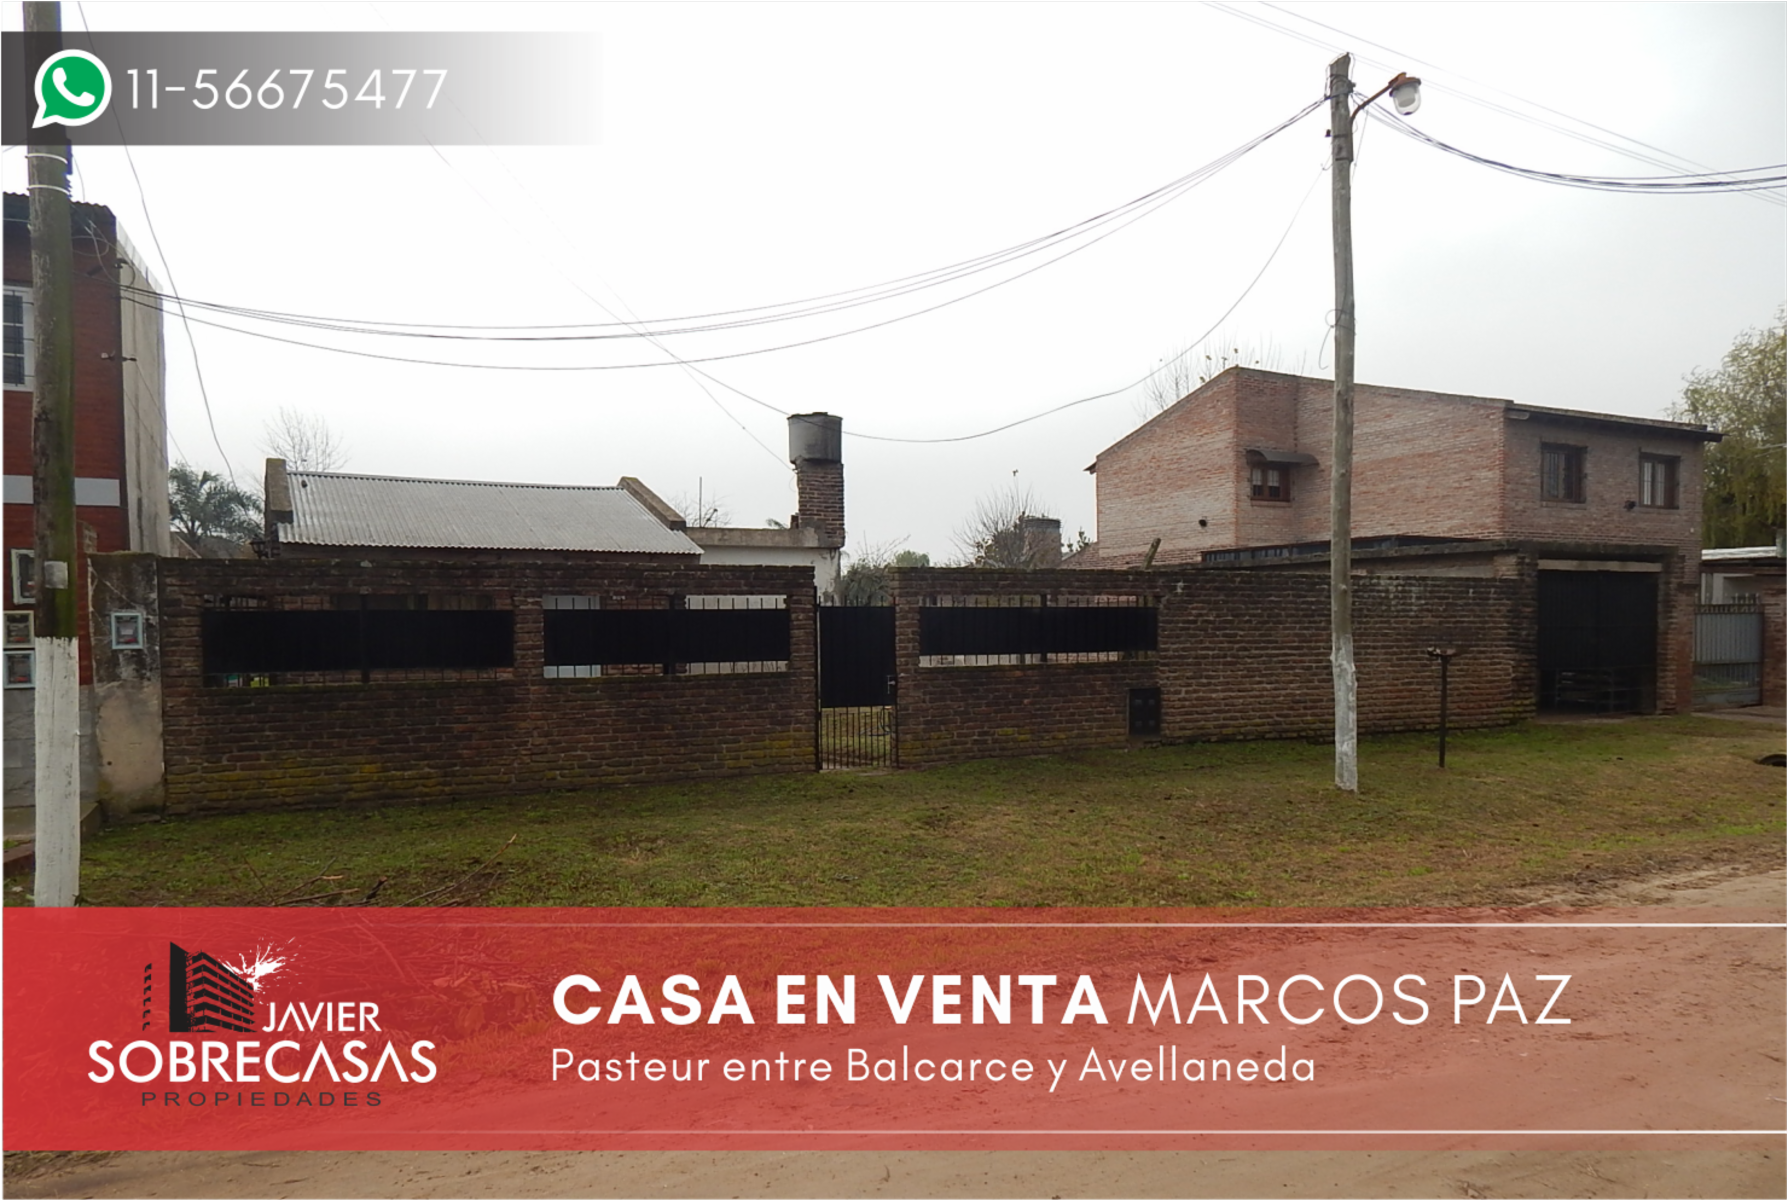 CASA CON 2 LOTES EN VENTA - Marcos Paz - Pcia. de Bs.As.